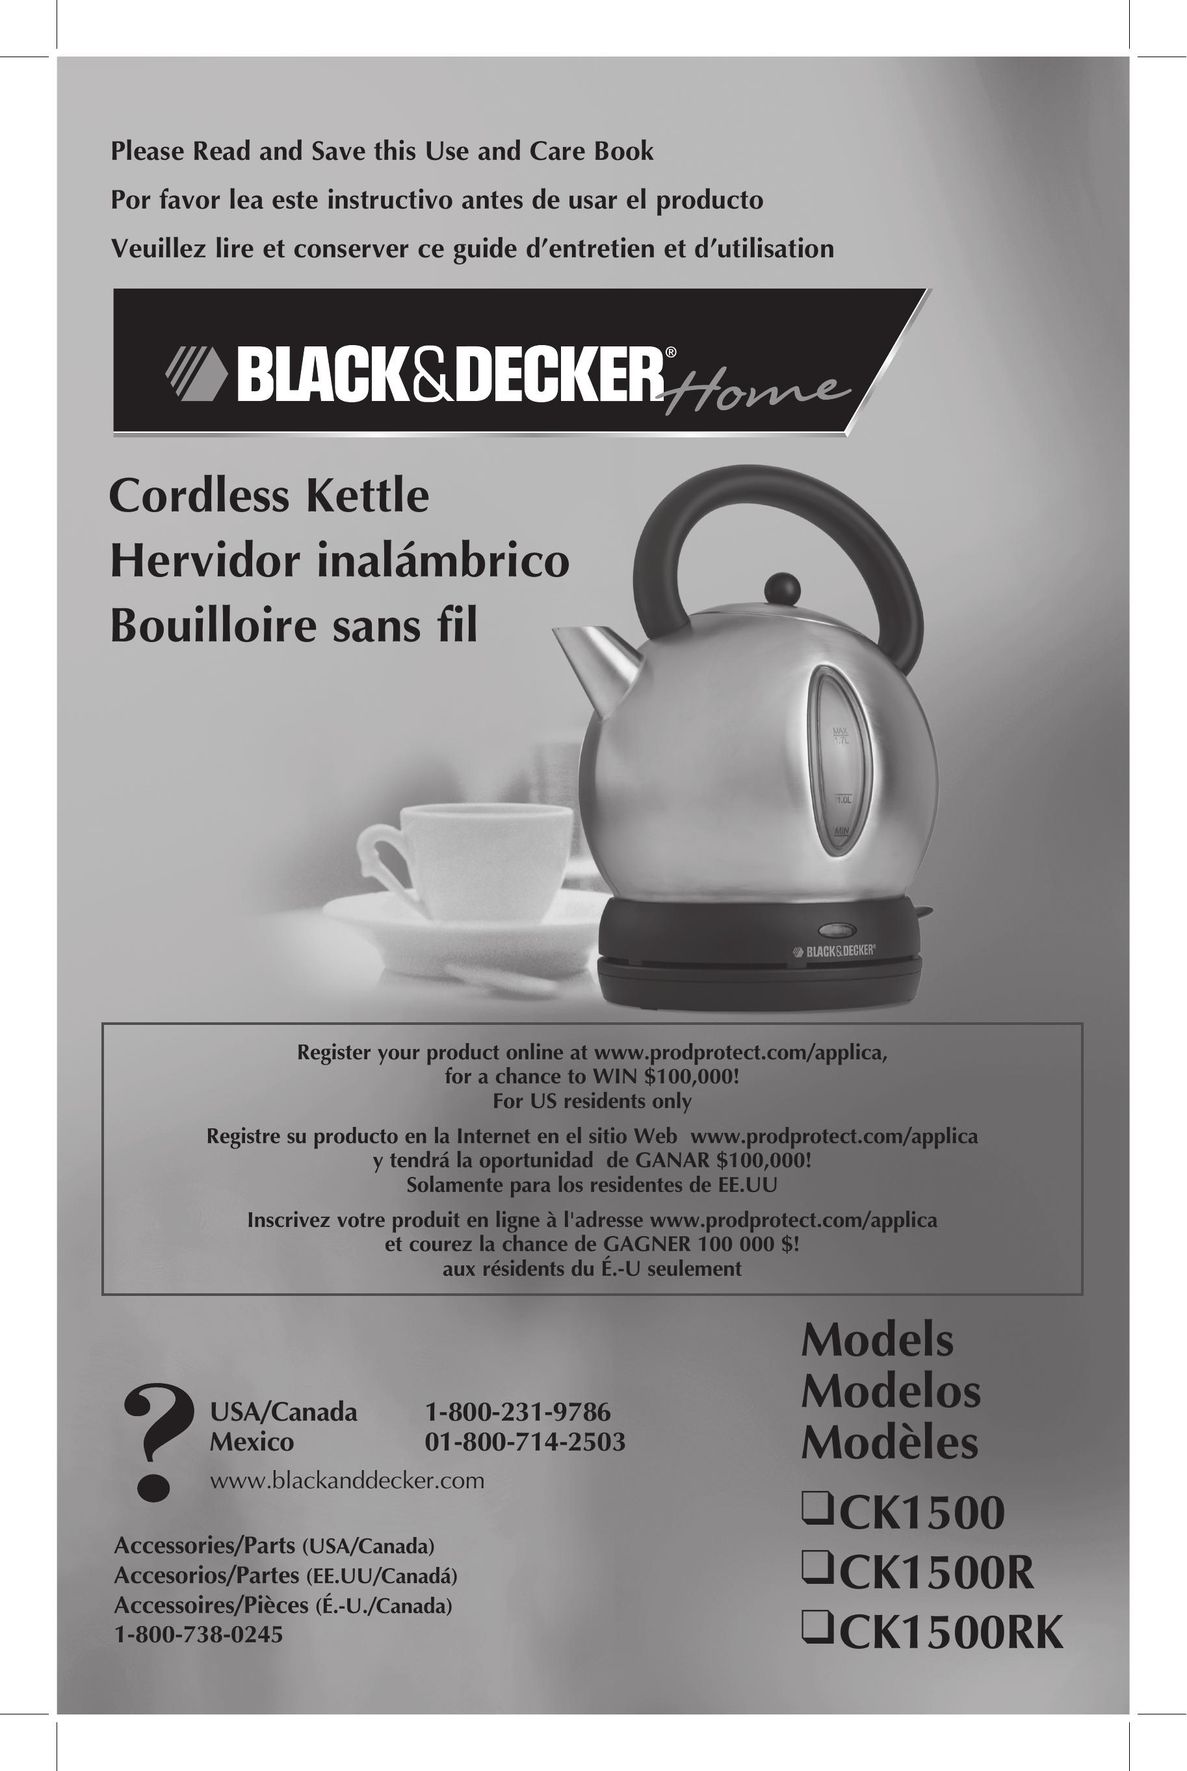 Black & Decker CK1500R Hot Beverage Maker User Manual